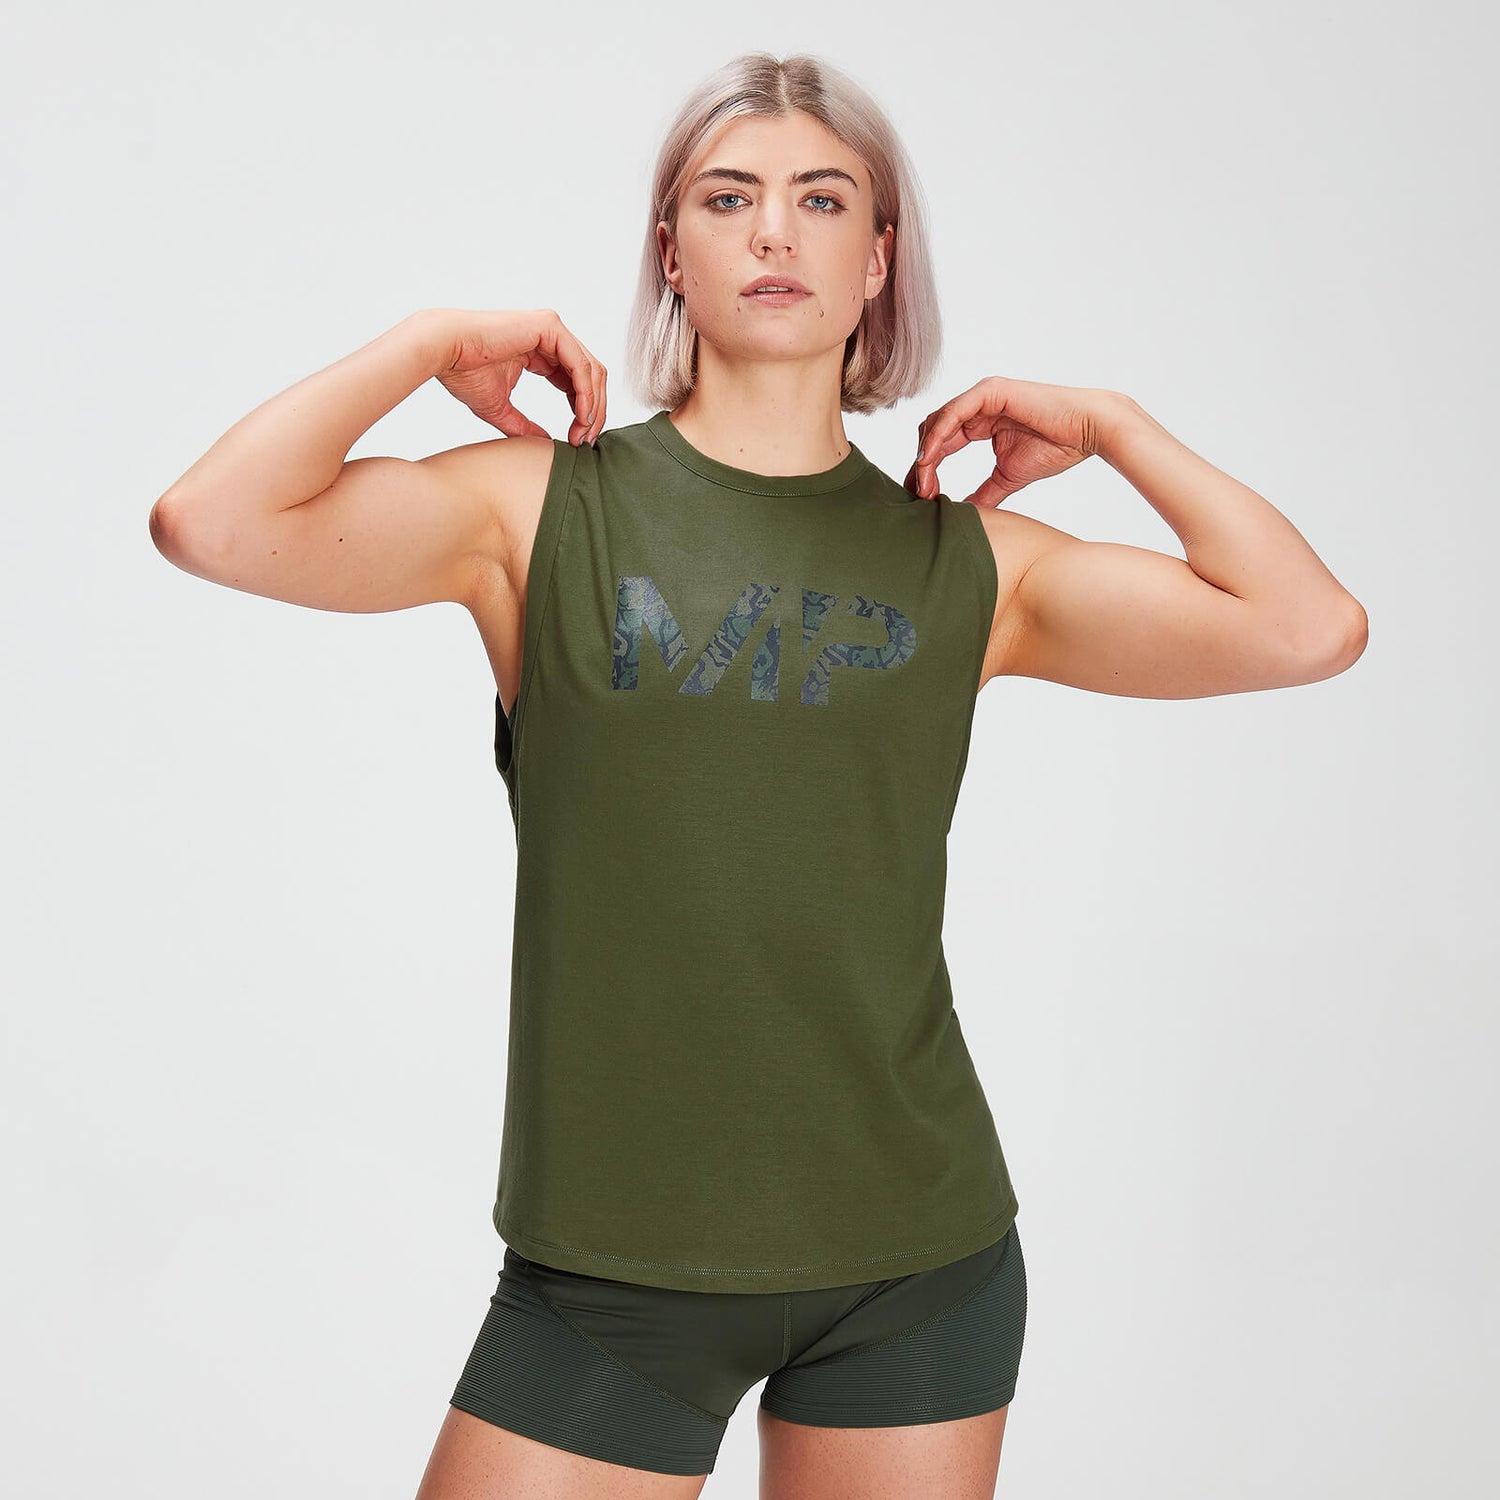 Damska koszulka bez rękawów z obniżonymi wycięciami na ramiona drirelease® – Leaf Green - XXS